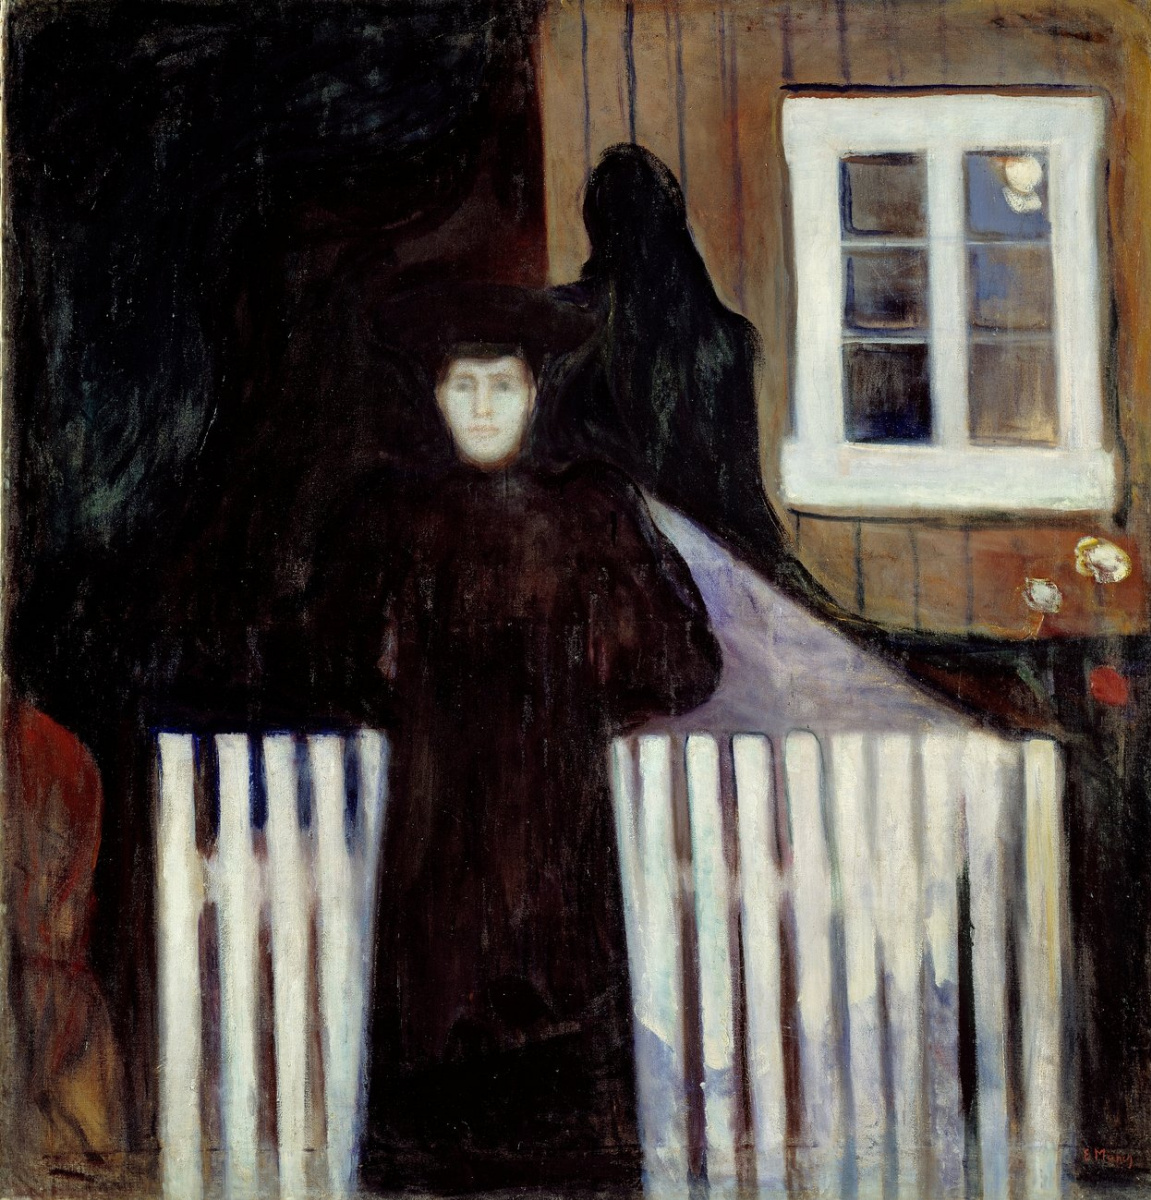 Эдвард Мунк. "Лунный свет". 1893. Национальная художественная галерея, Осло.